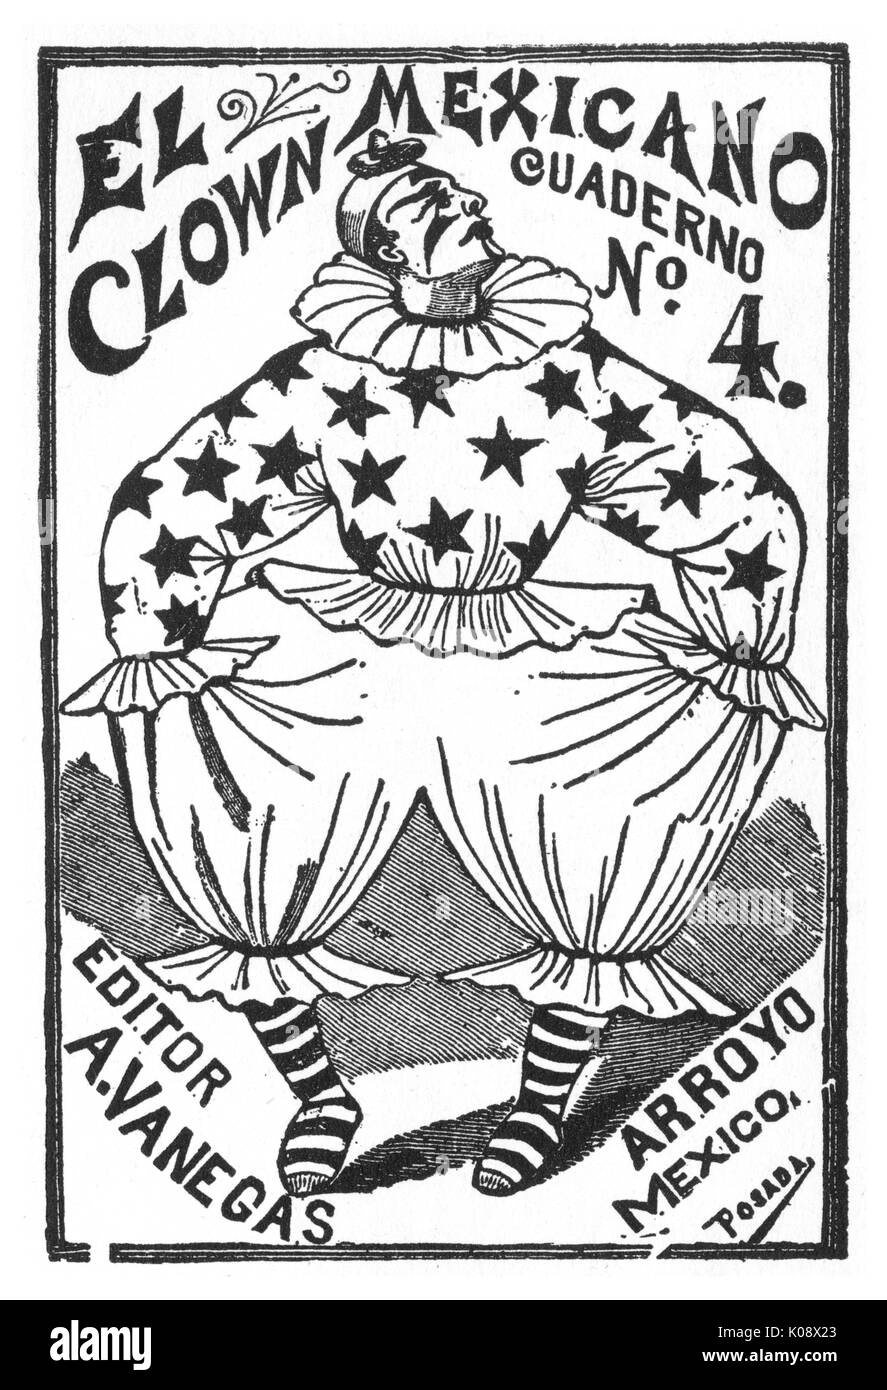 Cubierta de libro, El Payaso Mexicano -- El Payaso Mexicano, Libro 4,  mostrando un payaso en un traje cubierto de estrellas, publicado por  Arsacio Vanegas Arroyo. Fecha: circa 1890 Fotografía de stock - Alamy